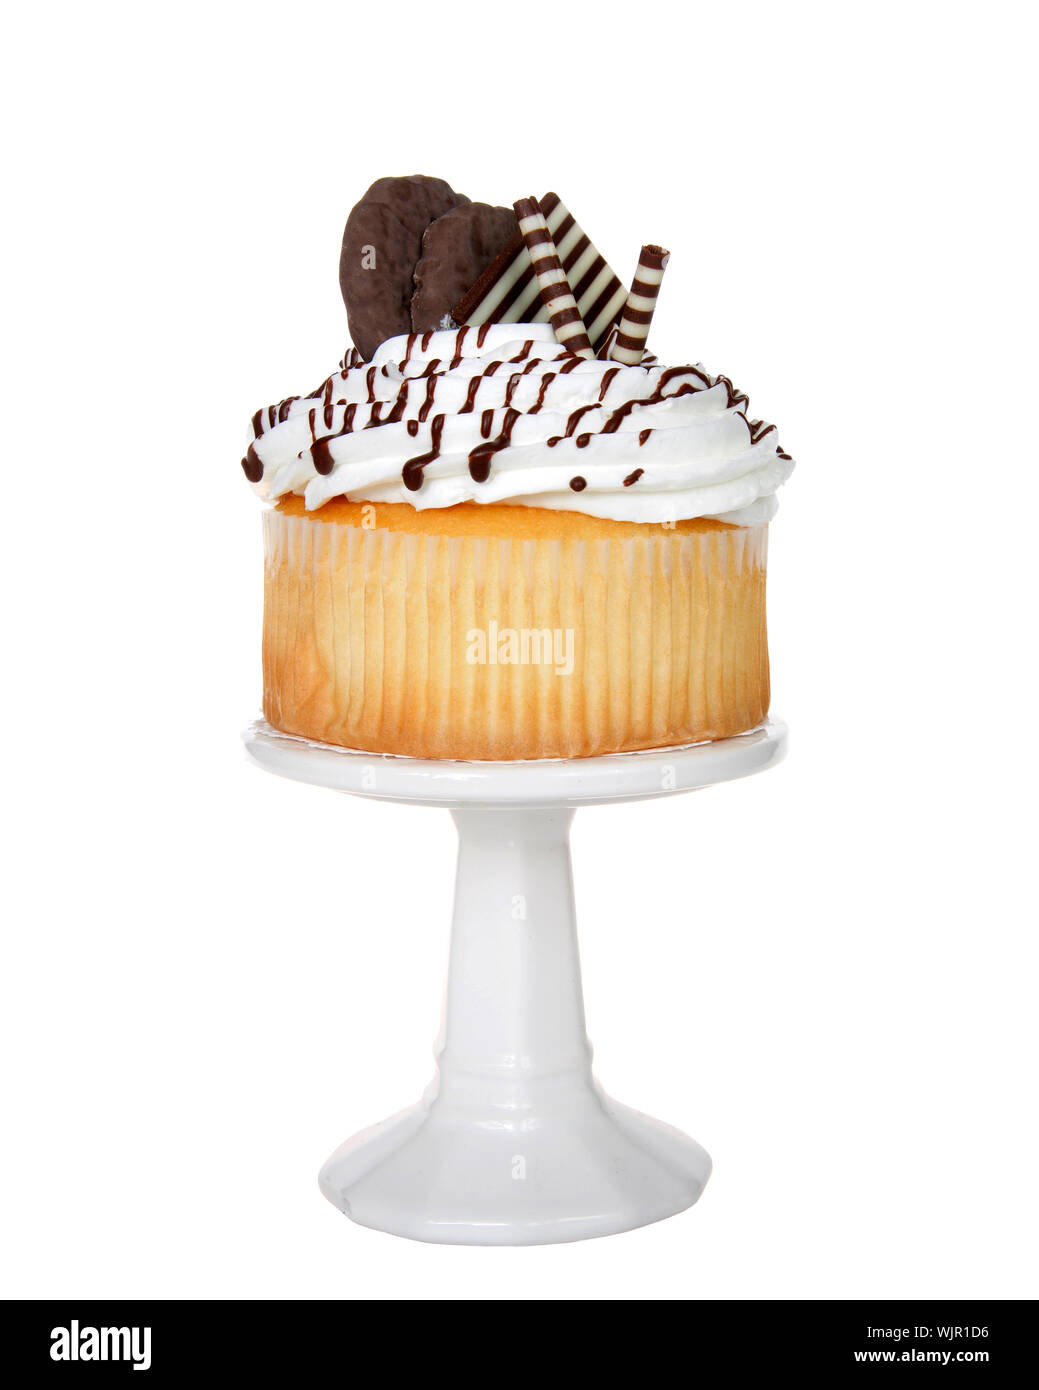 Vanille cup cake géant avec glaçage blanc, chocolat bonbons et chocolat cookies embellir assis sur un piédestal blanc isolé sur blanc. Banque D'Images